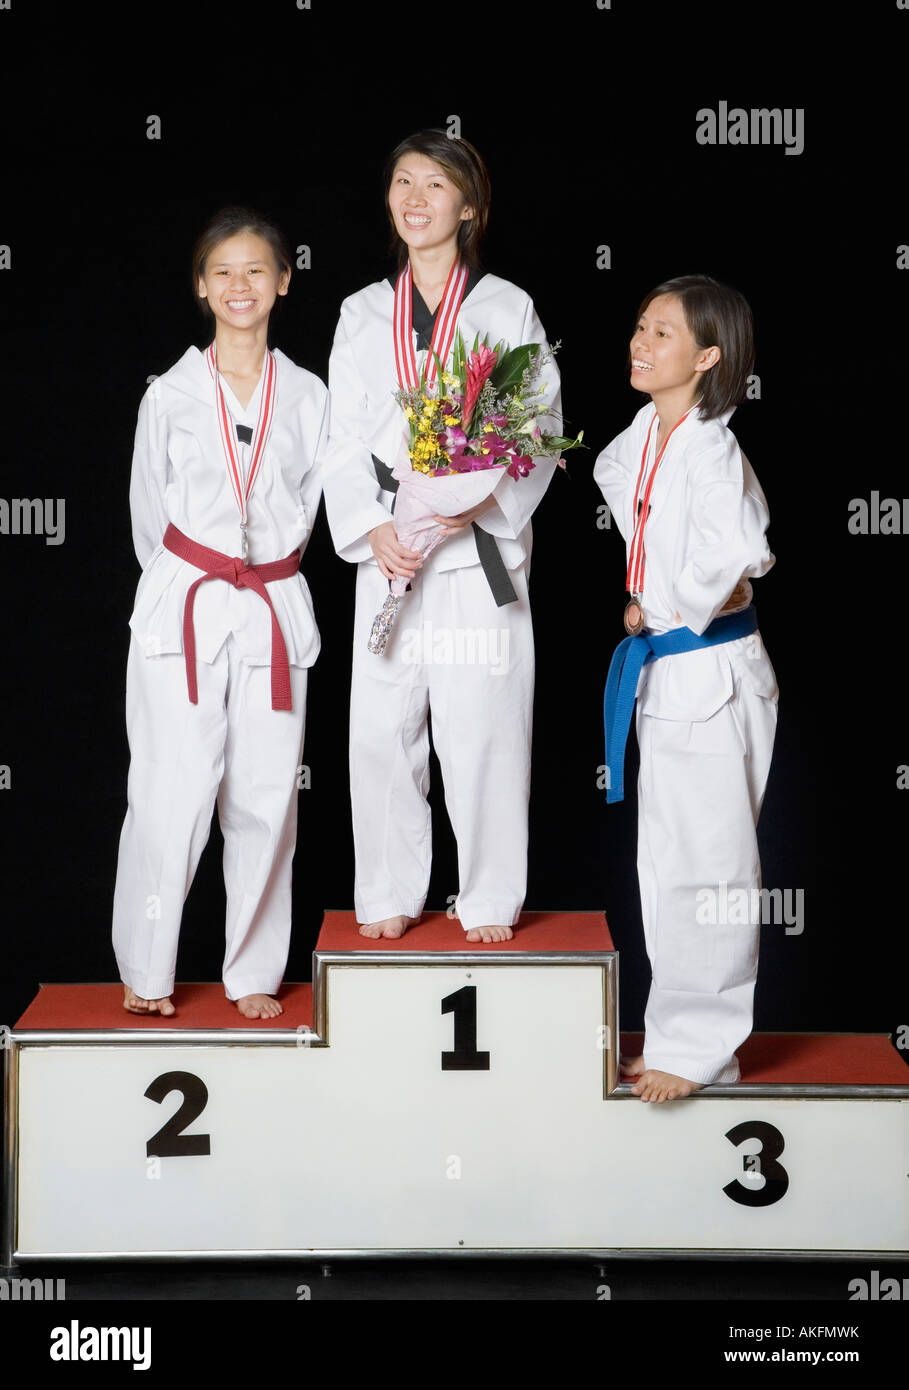 Drei junge Frauen stehen auf einem Podium Gewinner mit ihren Medaillen Stockfoto